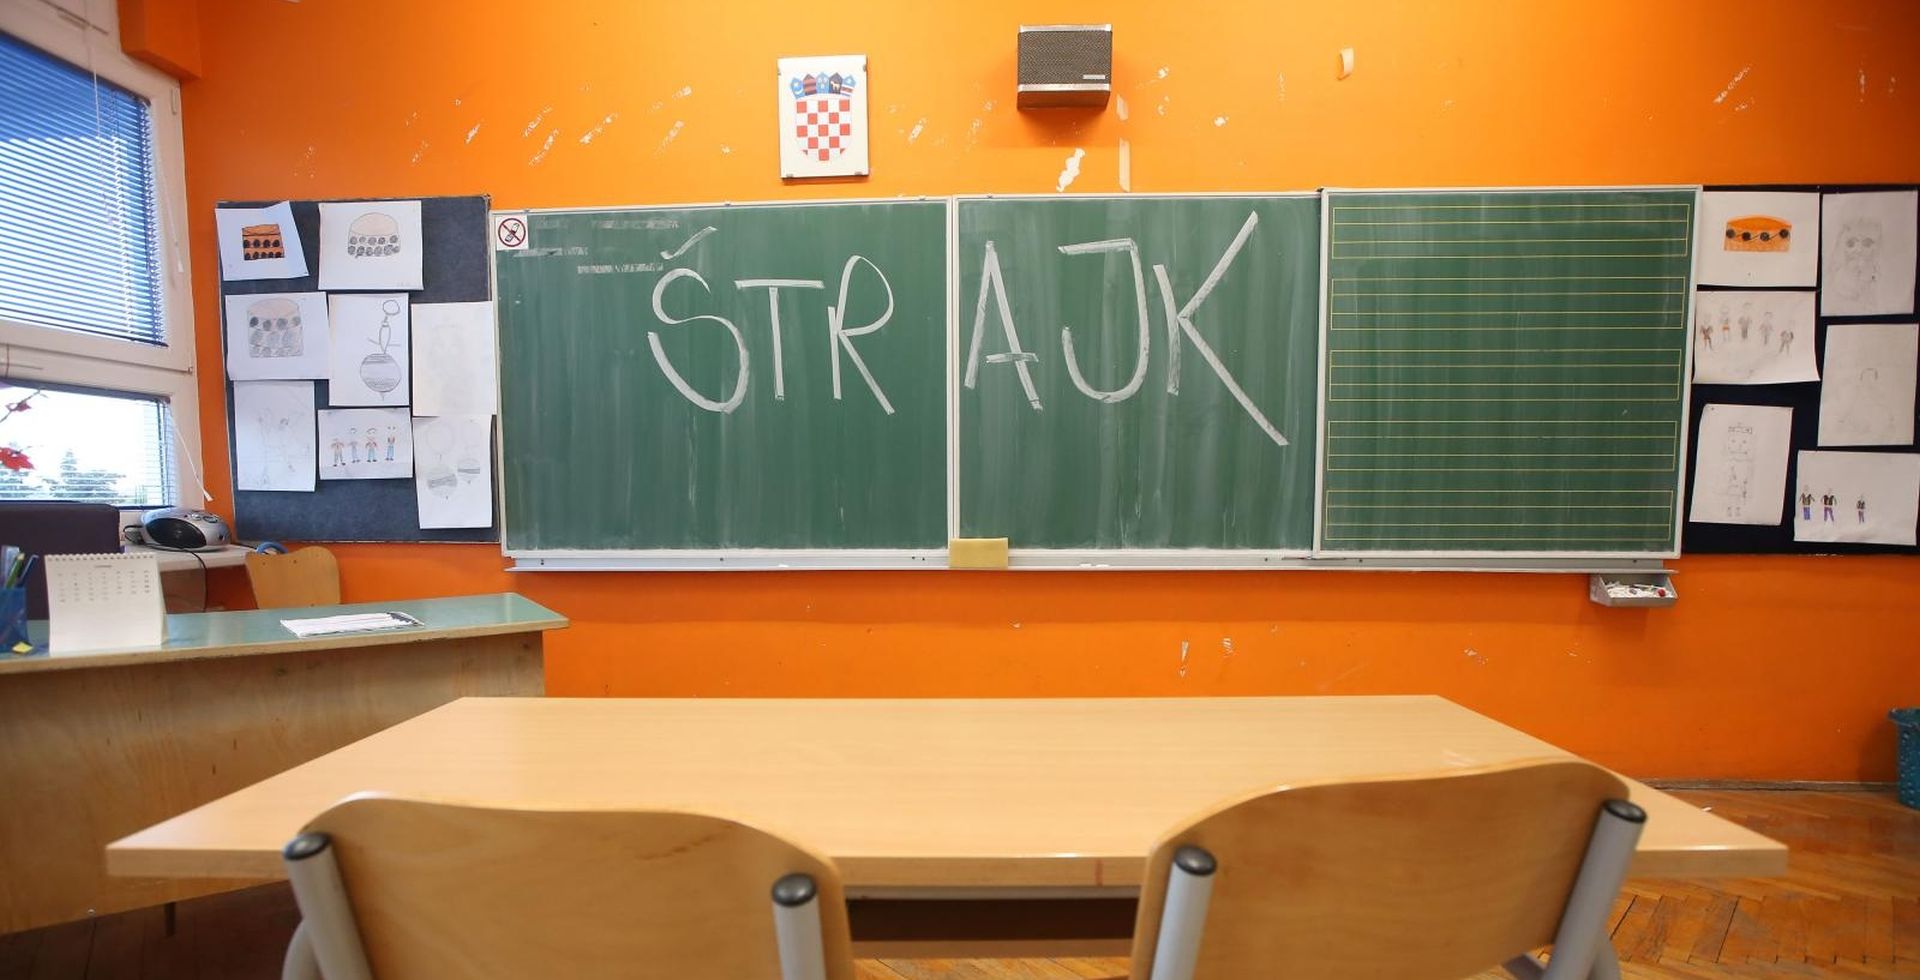 21.10.2019., Sibenik - Danas je strajk prosvjetnih djelatnika osnovnih i srednjih skola u cijeloj Hrvatskoj.
Photo: Dusko Jaramaz/PIXSELL